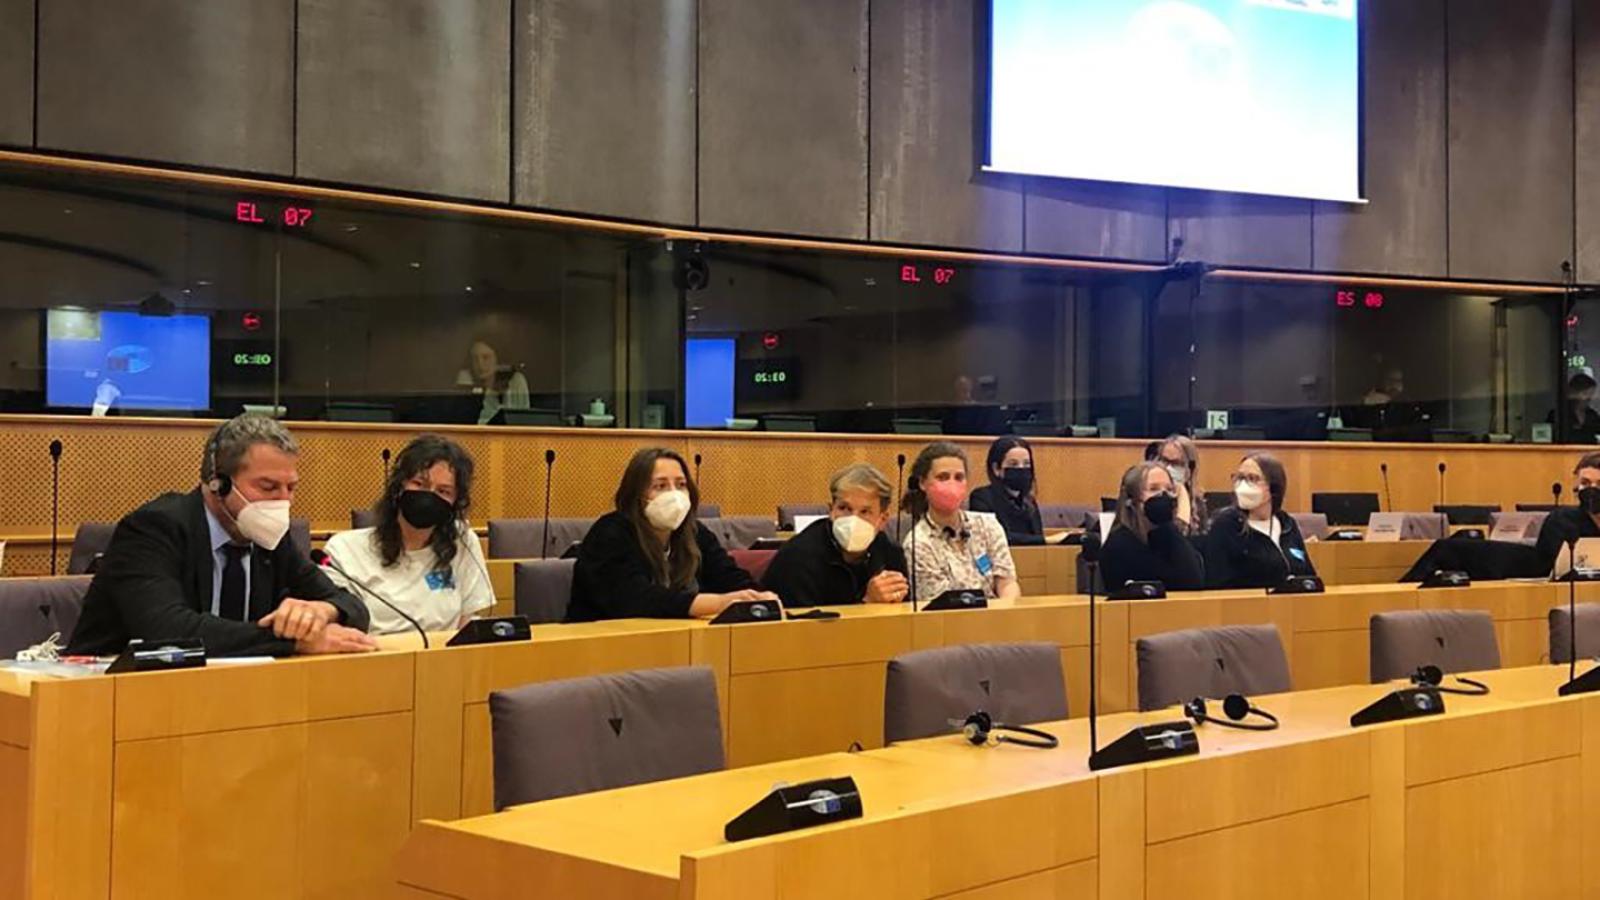 Studierende im Plenarsaal eines Ausschusses des Europäischen Parlaments